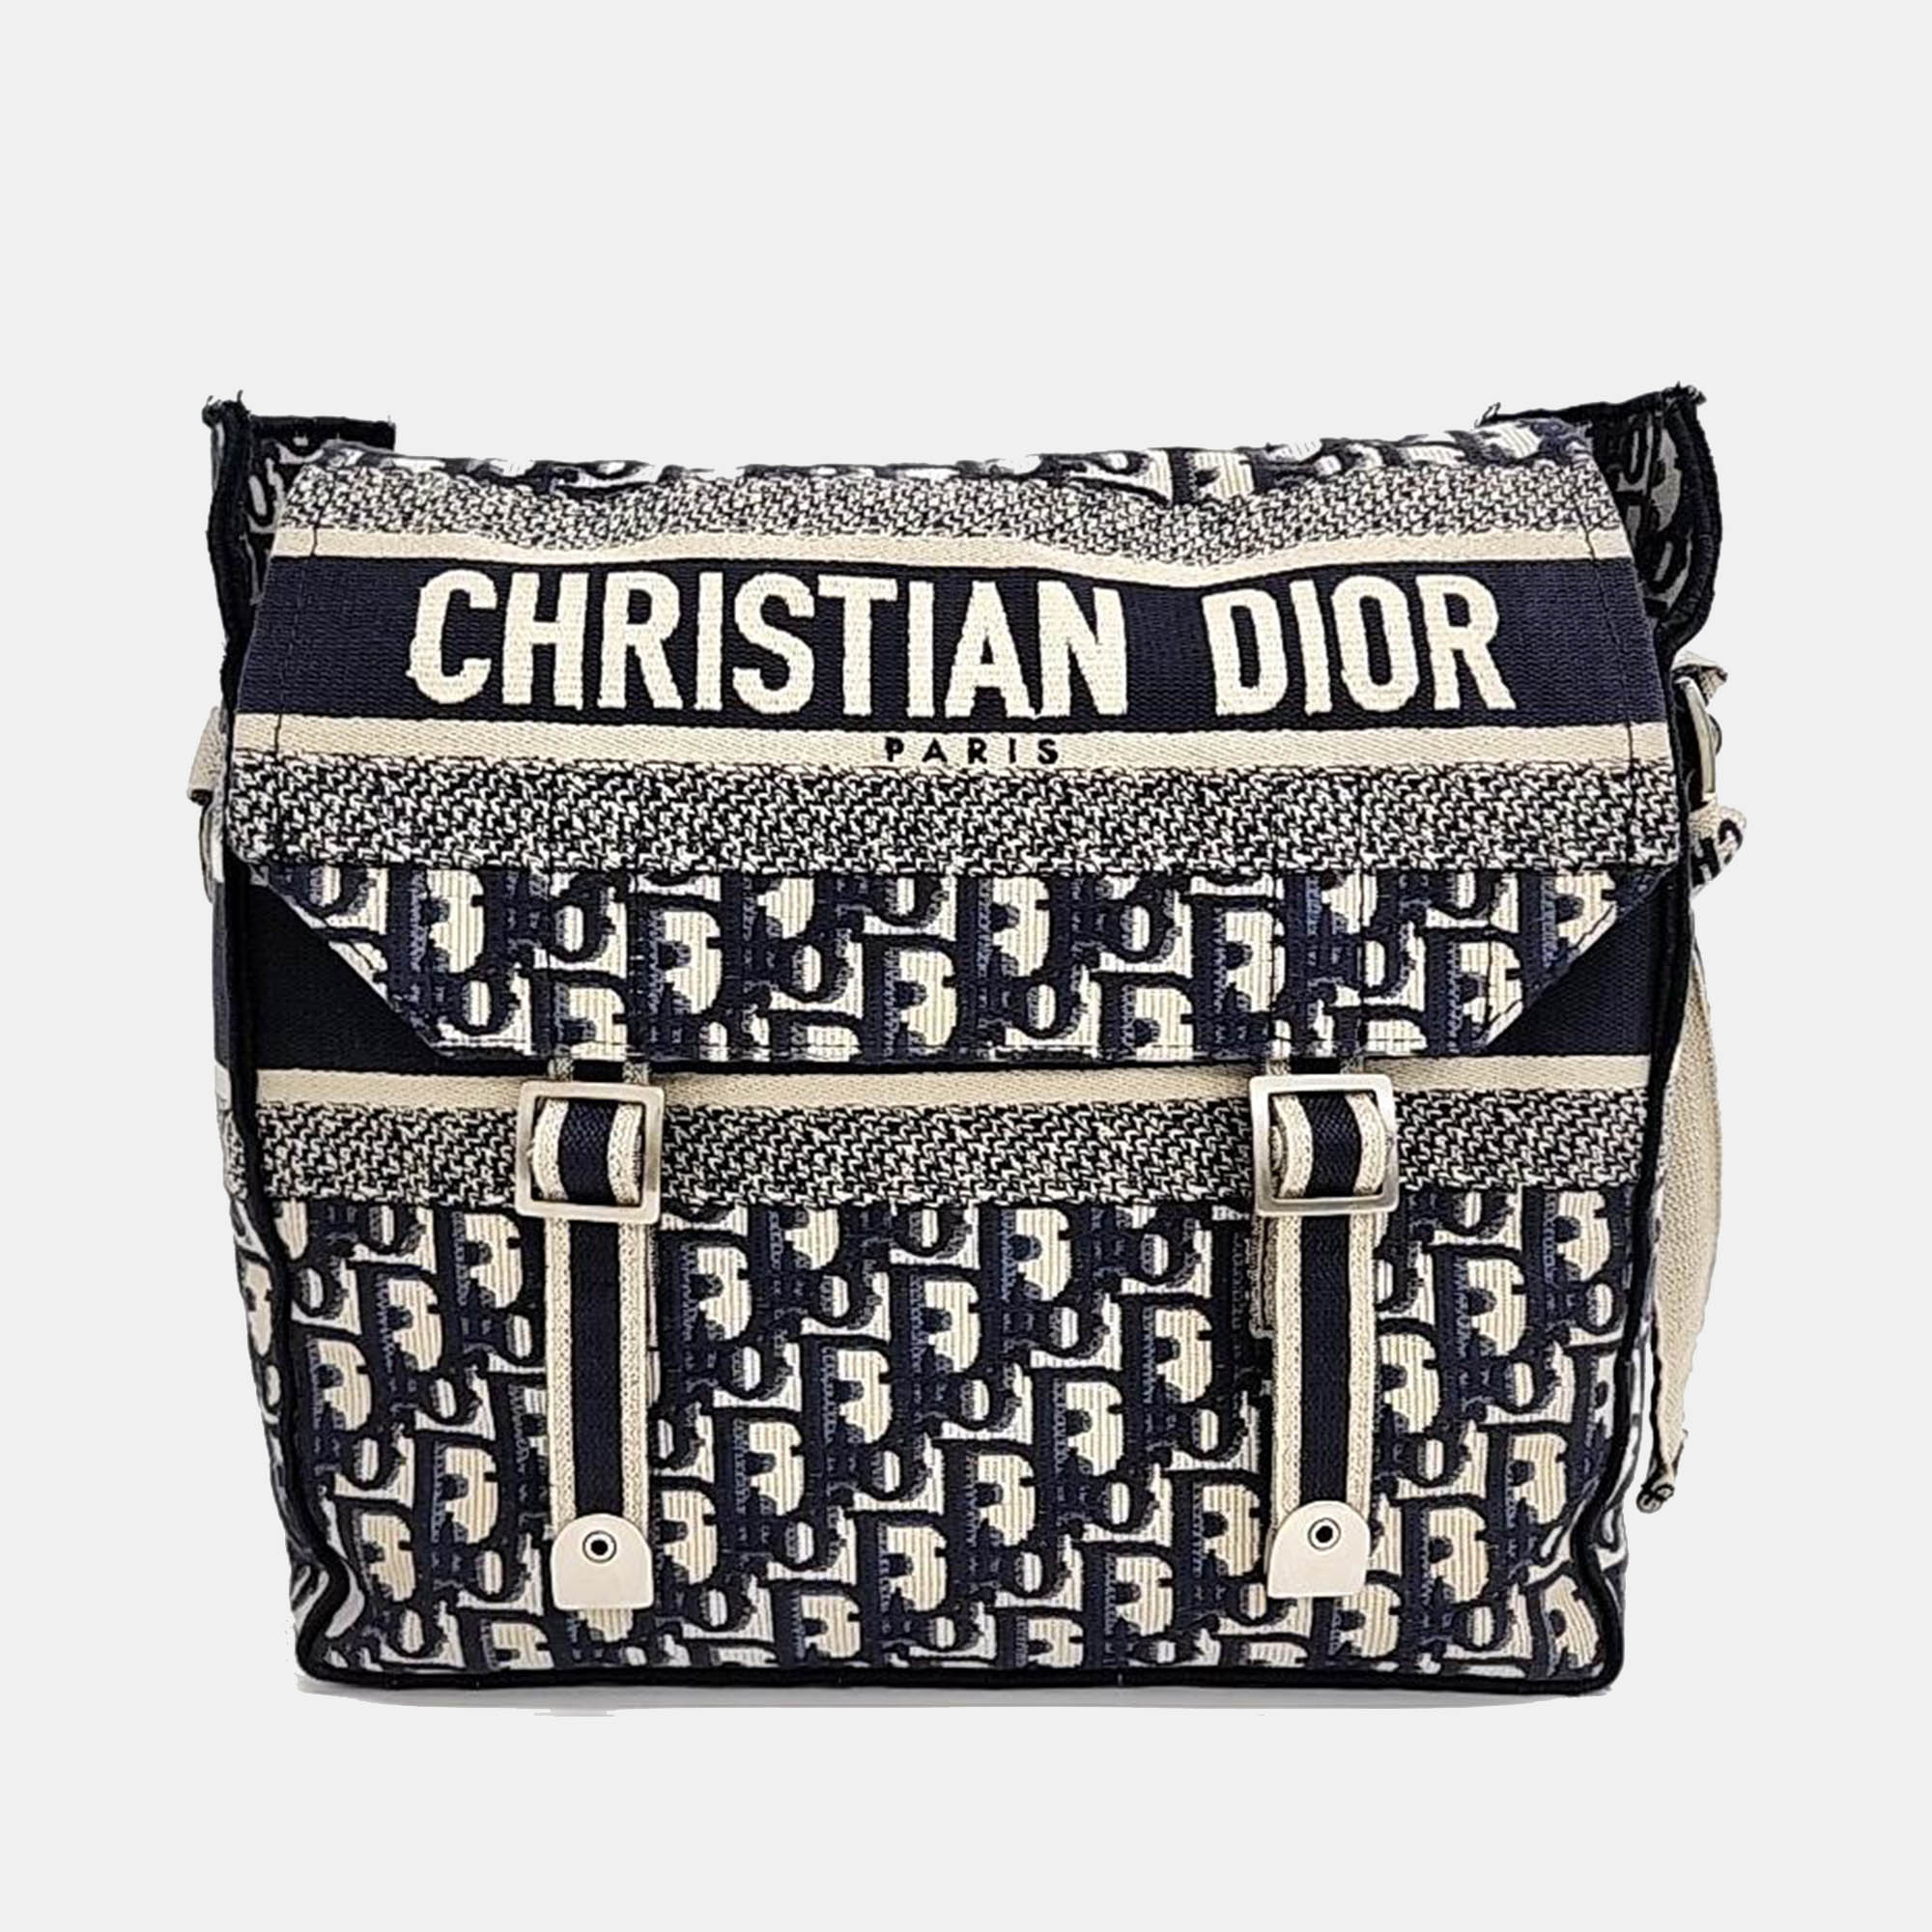 Christian dior black logo oblique diorcmap messenger bag